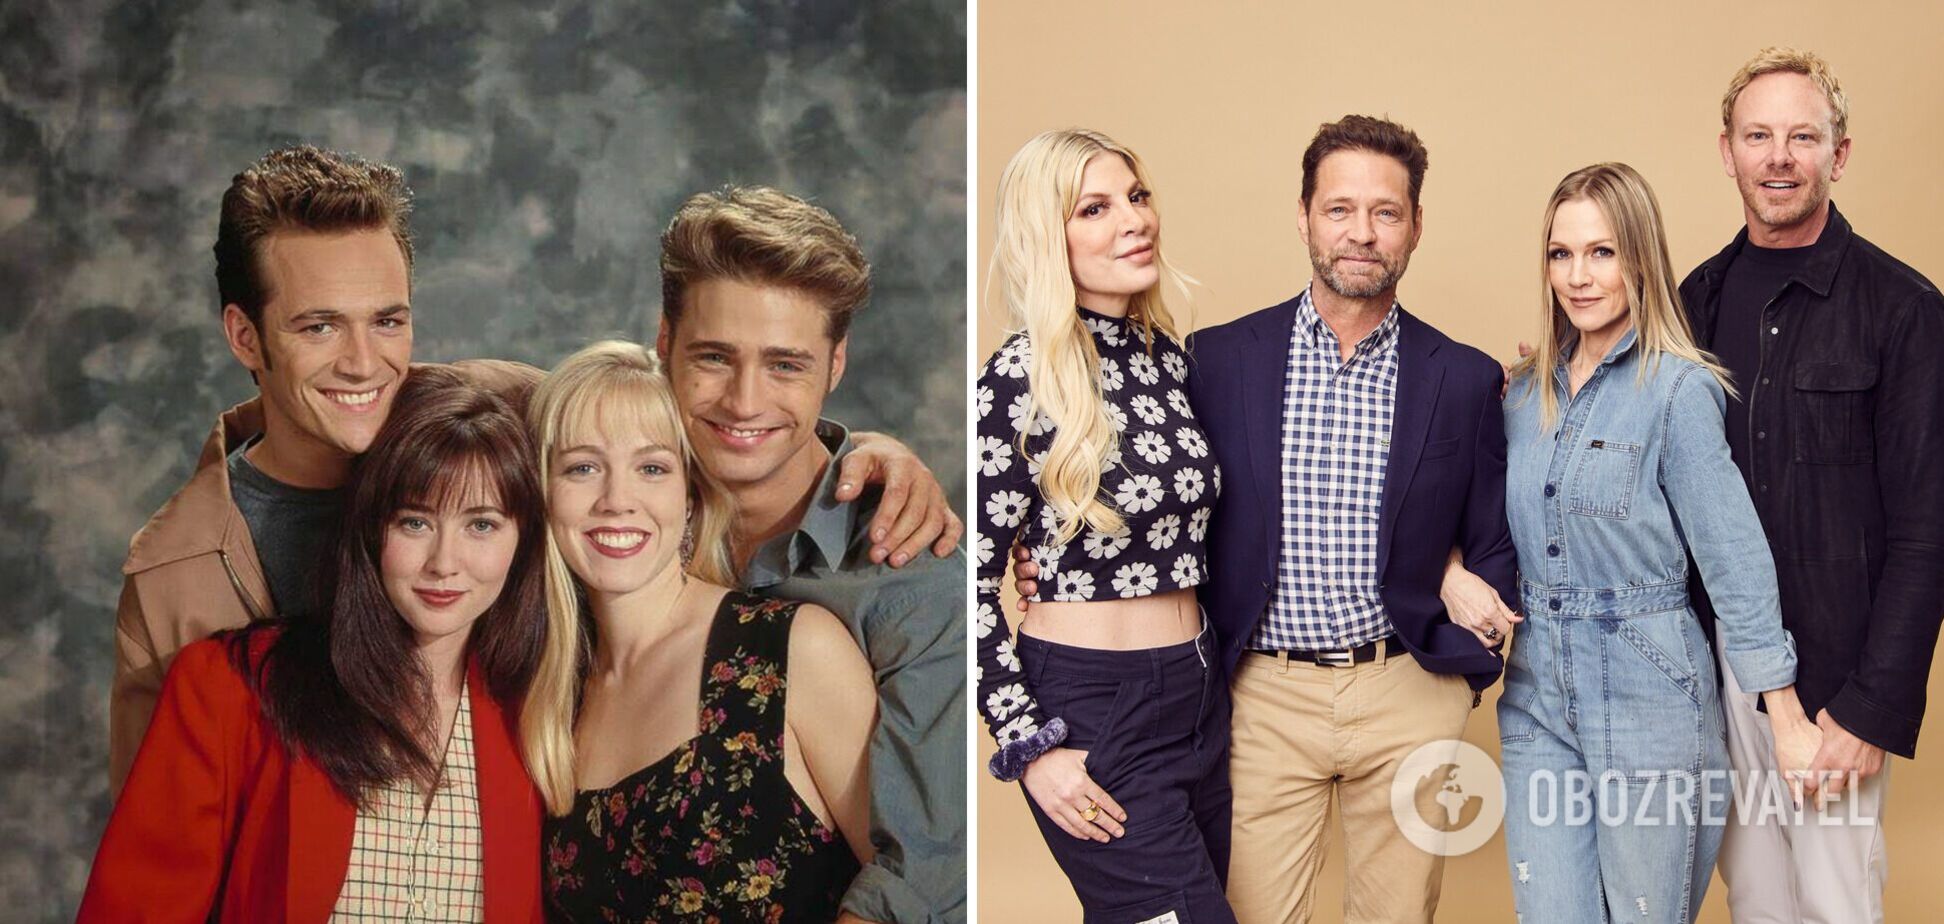 'Кучерявый в свои 60 выглядит идеально': как состарились актеры из культового сериала 'Беверли-Хиллз, 90210'